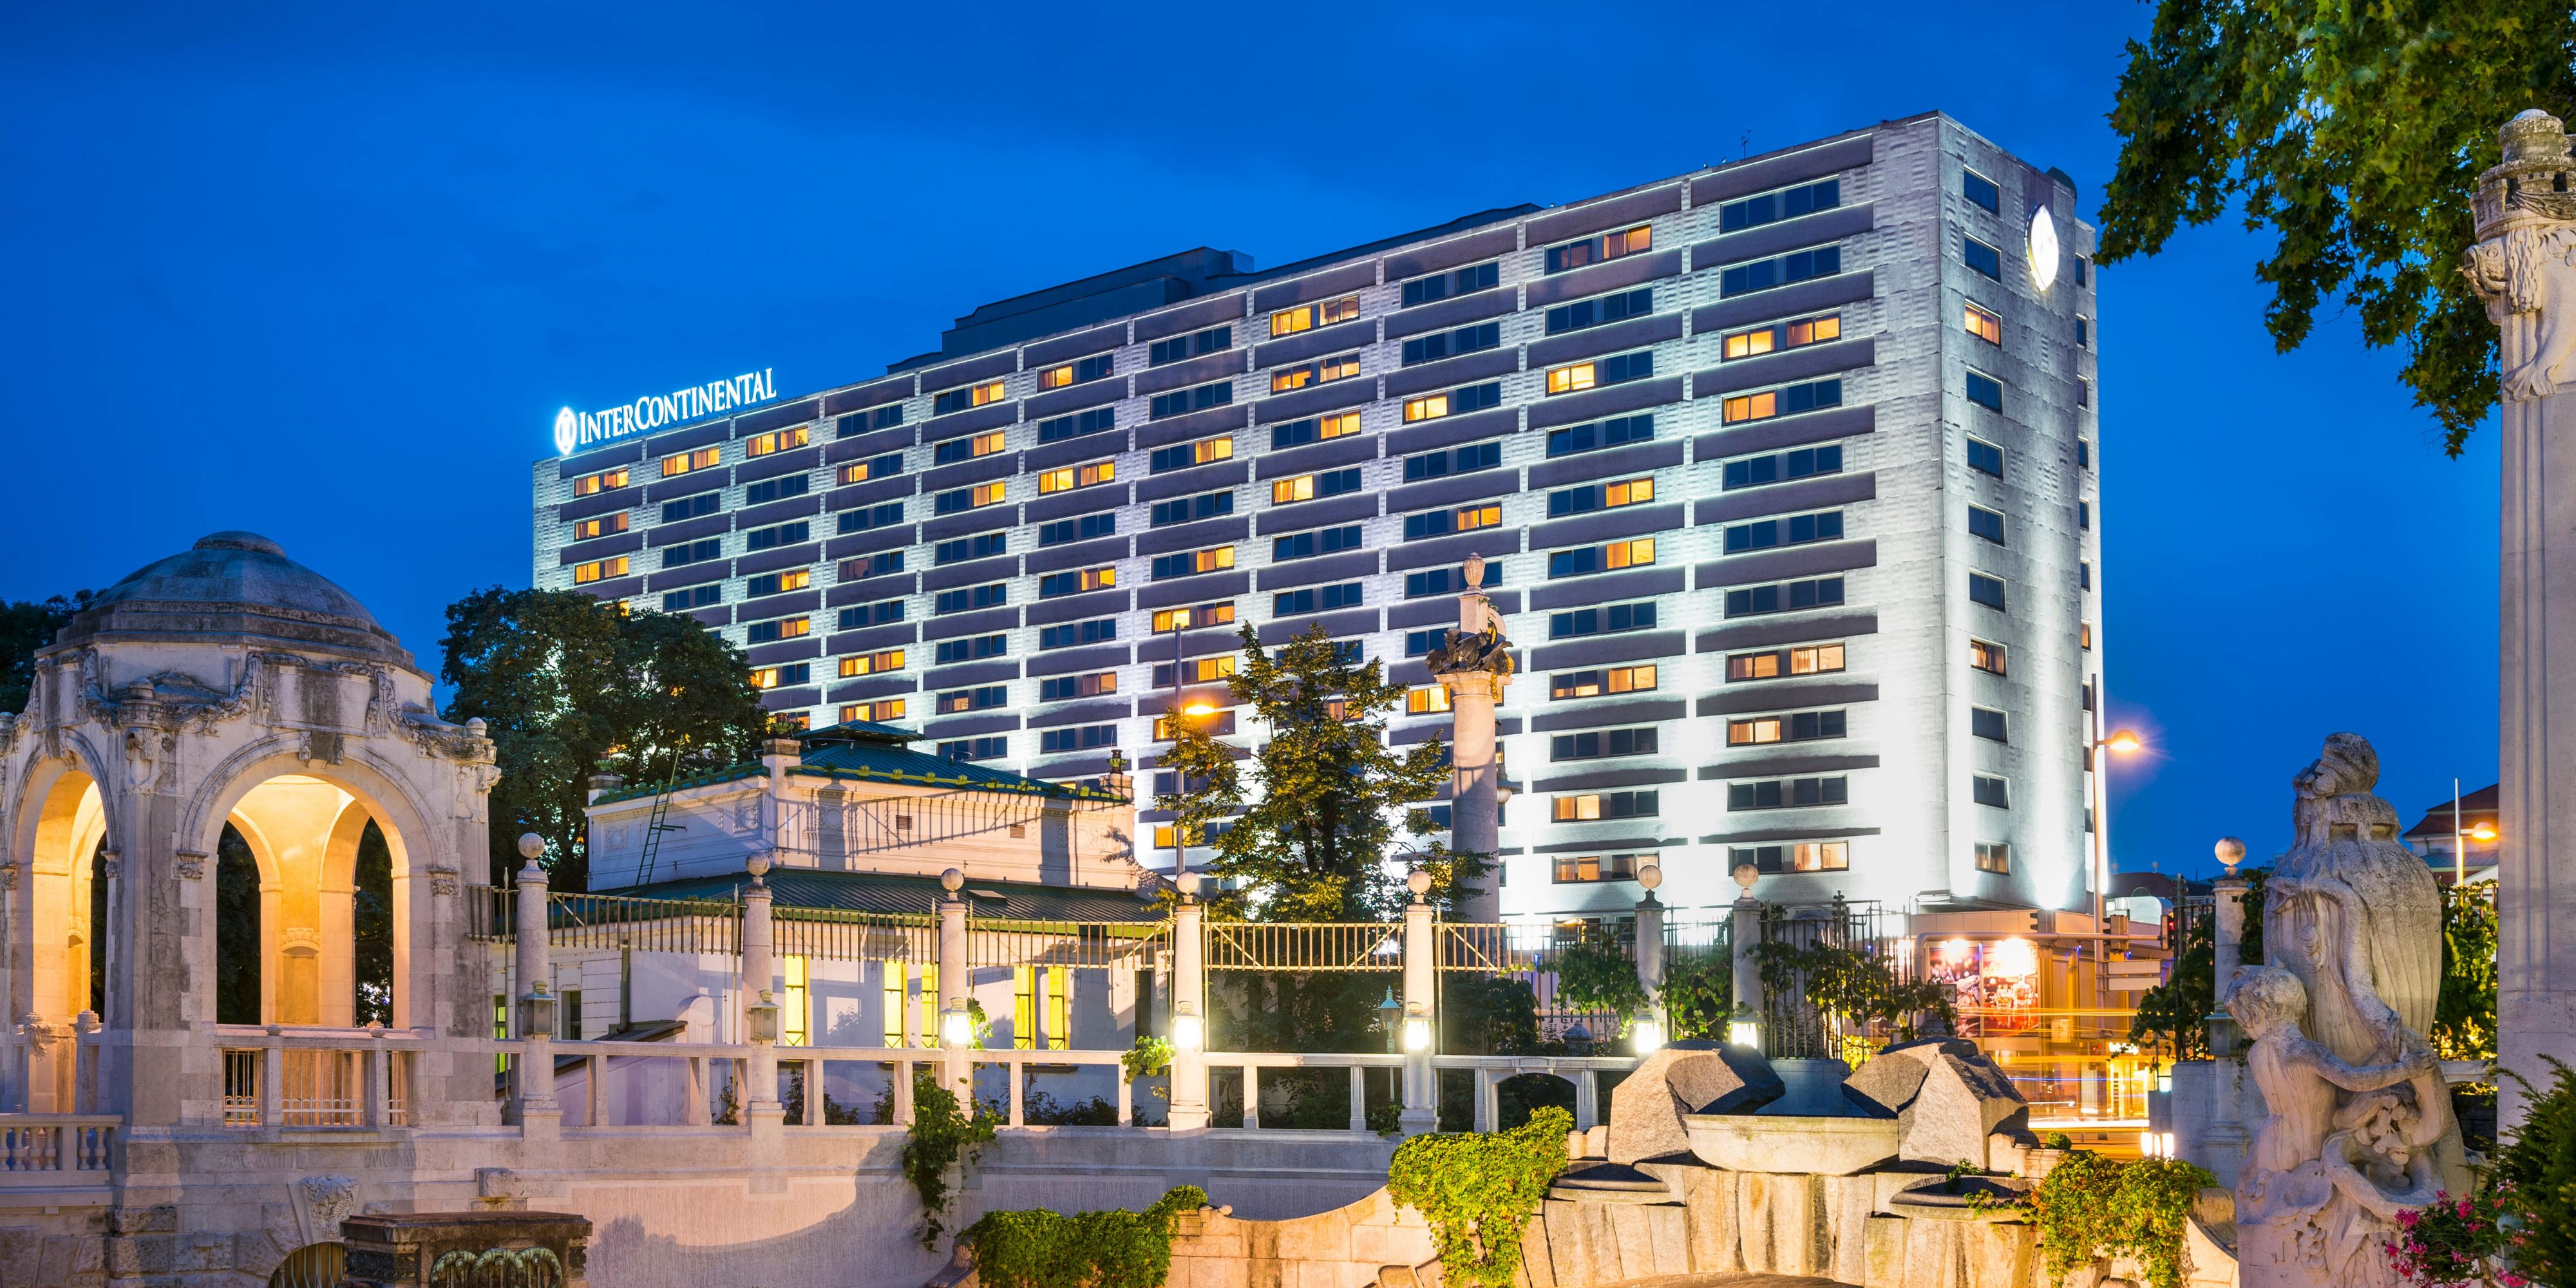 Luxury City Centre Hotel Intercontinental Hotel Vienna - 